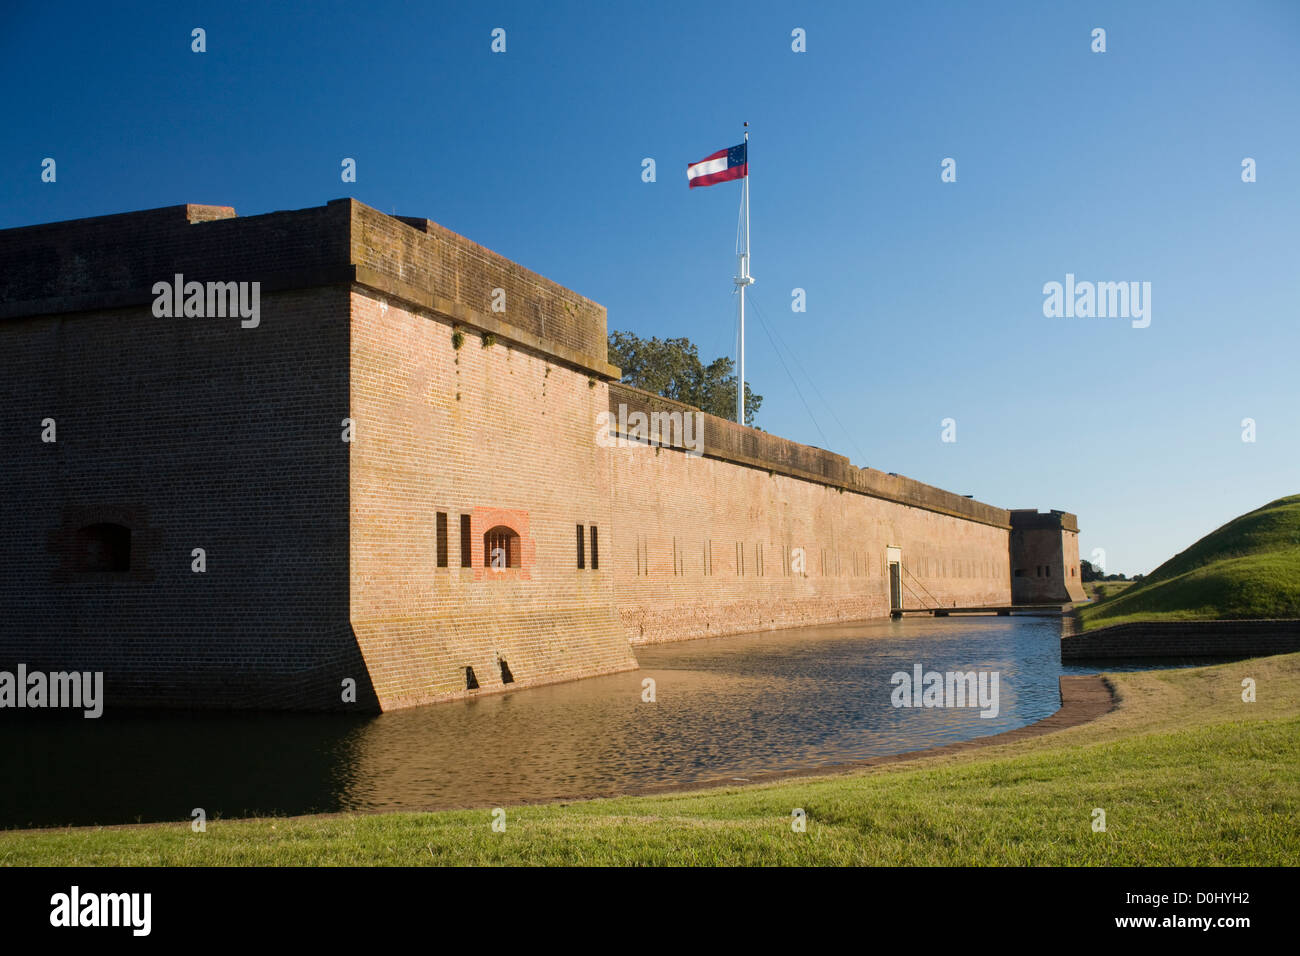 Fort Pulaski Monumento Nazionale è una guerra civile era forte costruito su Cockspur Island per proteggere il fiume si avvicina a Savannah. Foto Stock